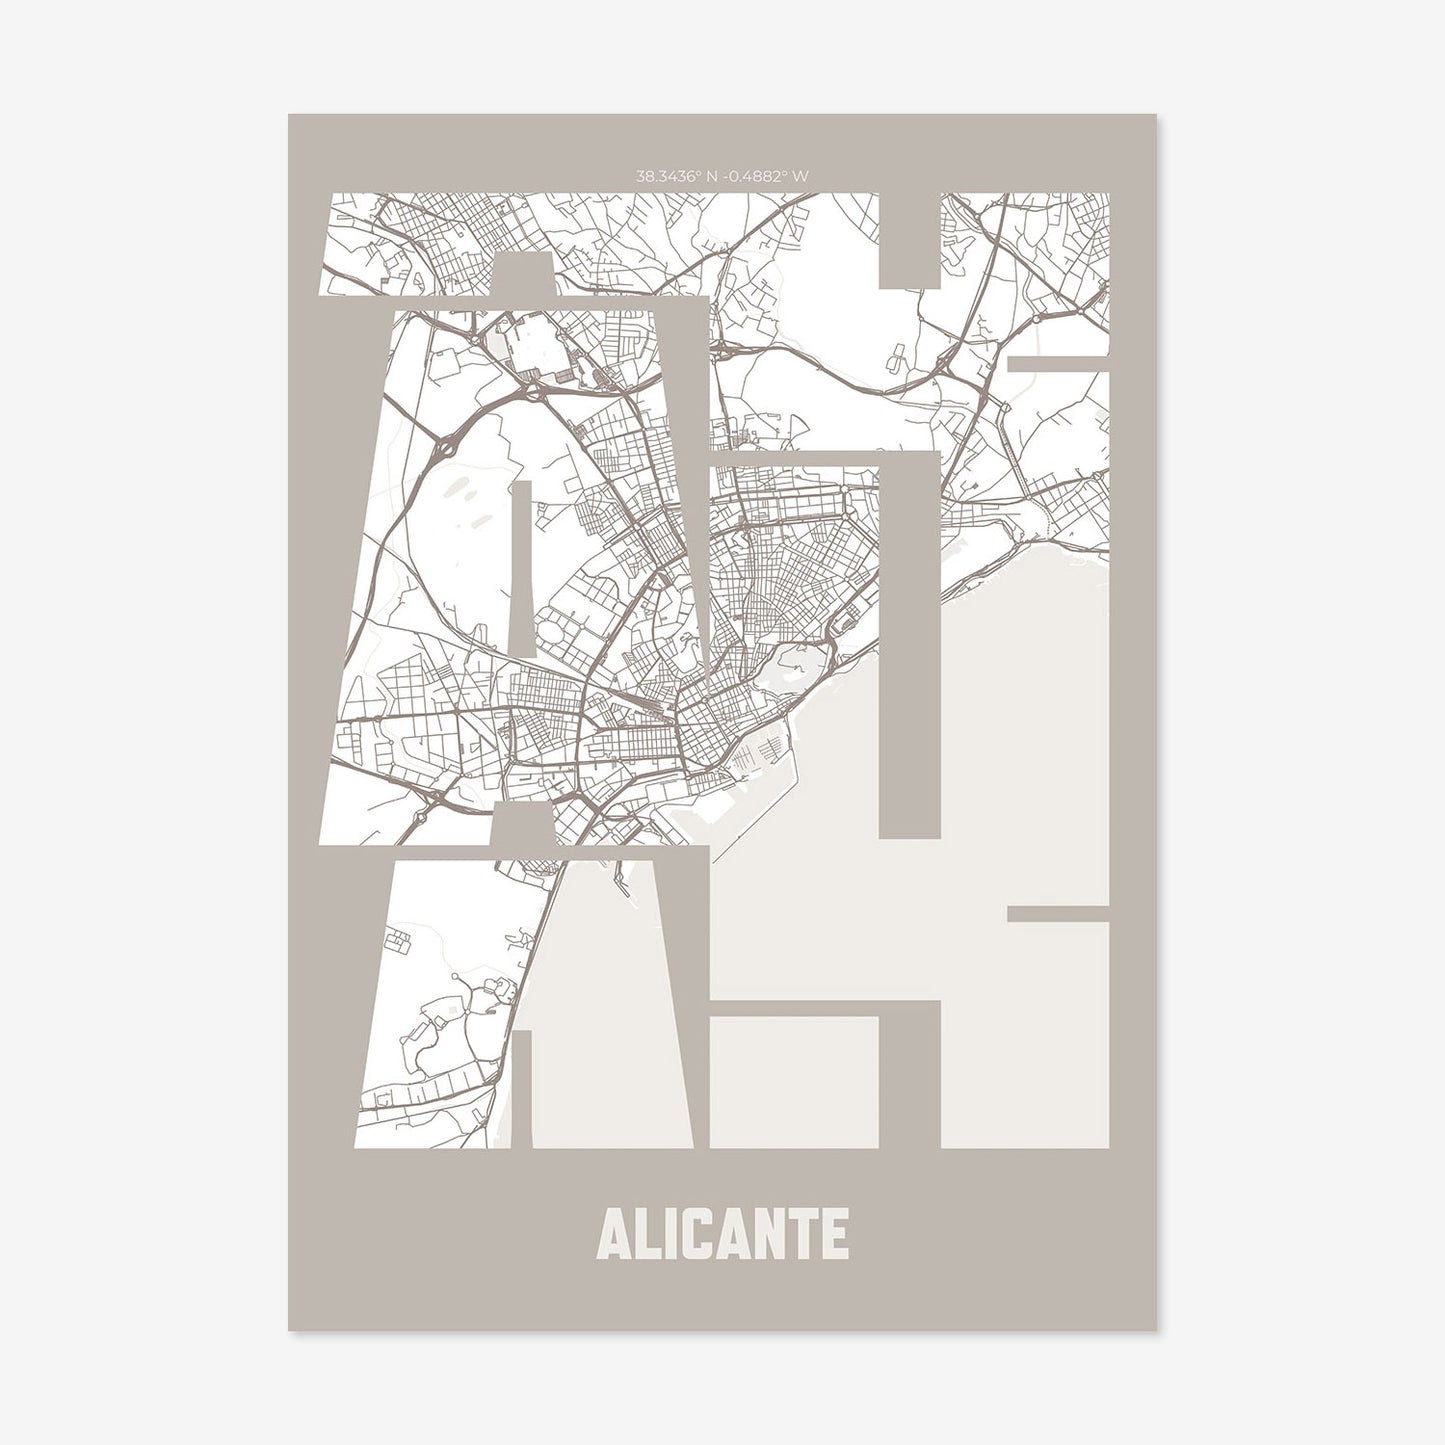 ALI Alicante Poster